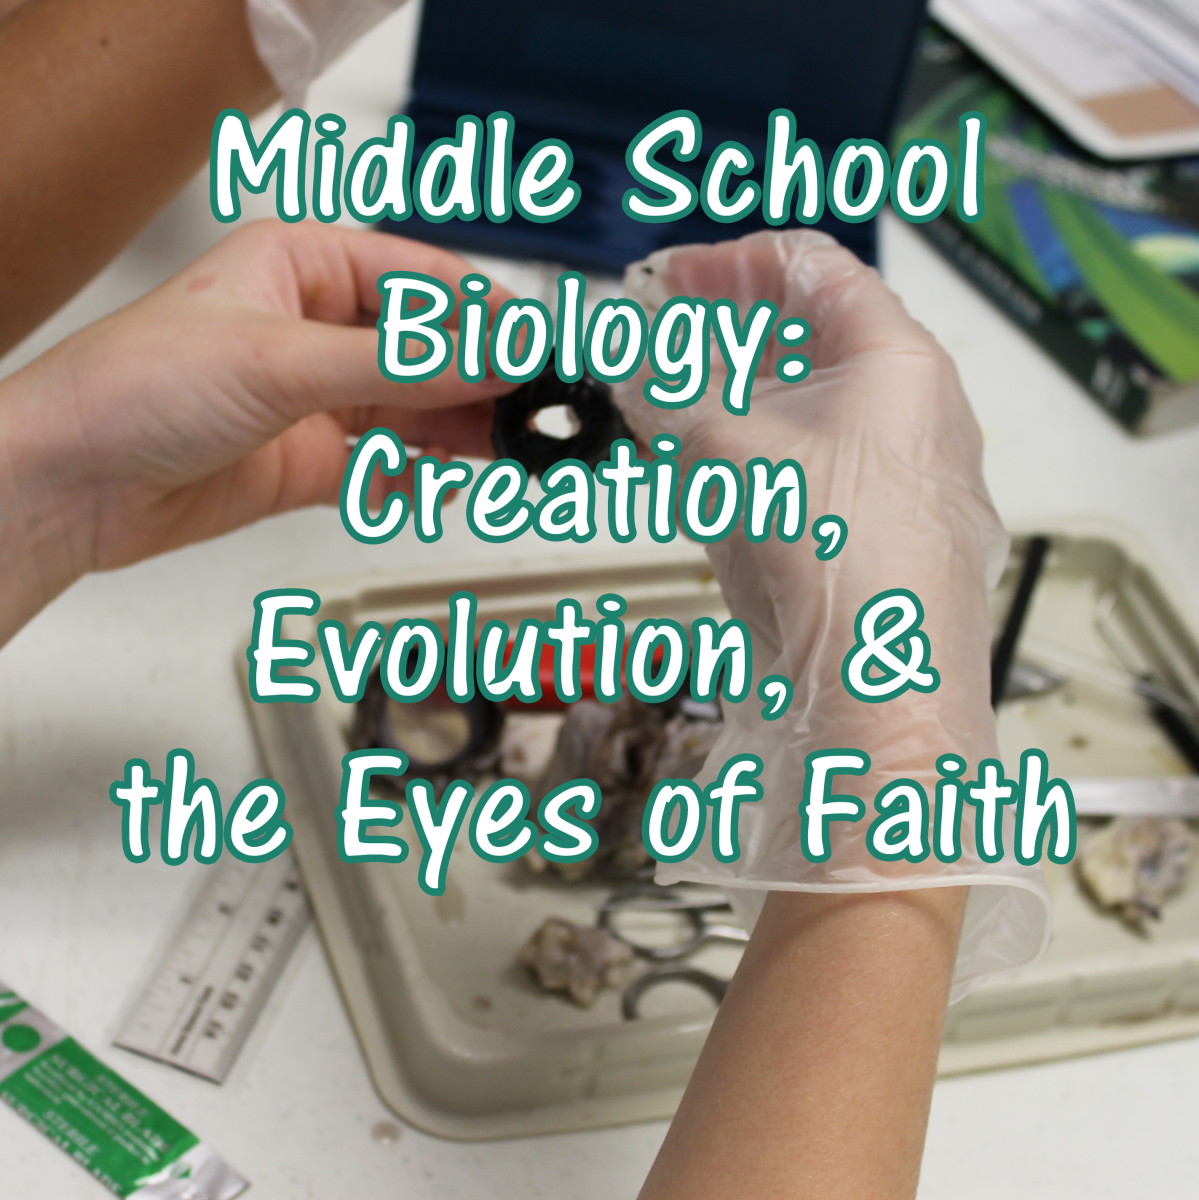 Creation, Evolution, & the Eyes of Faith Lesson